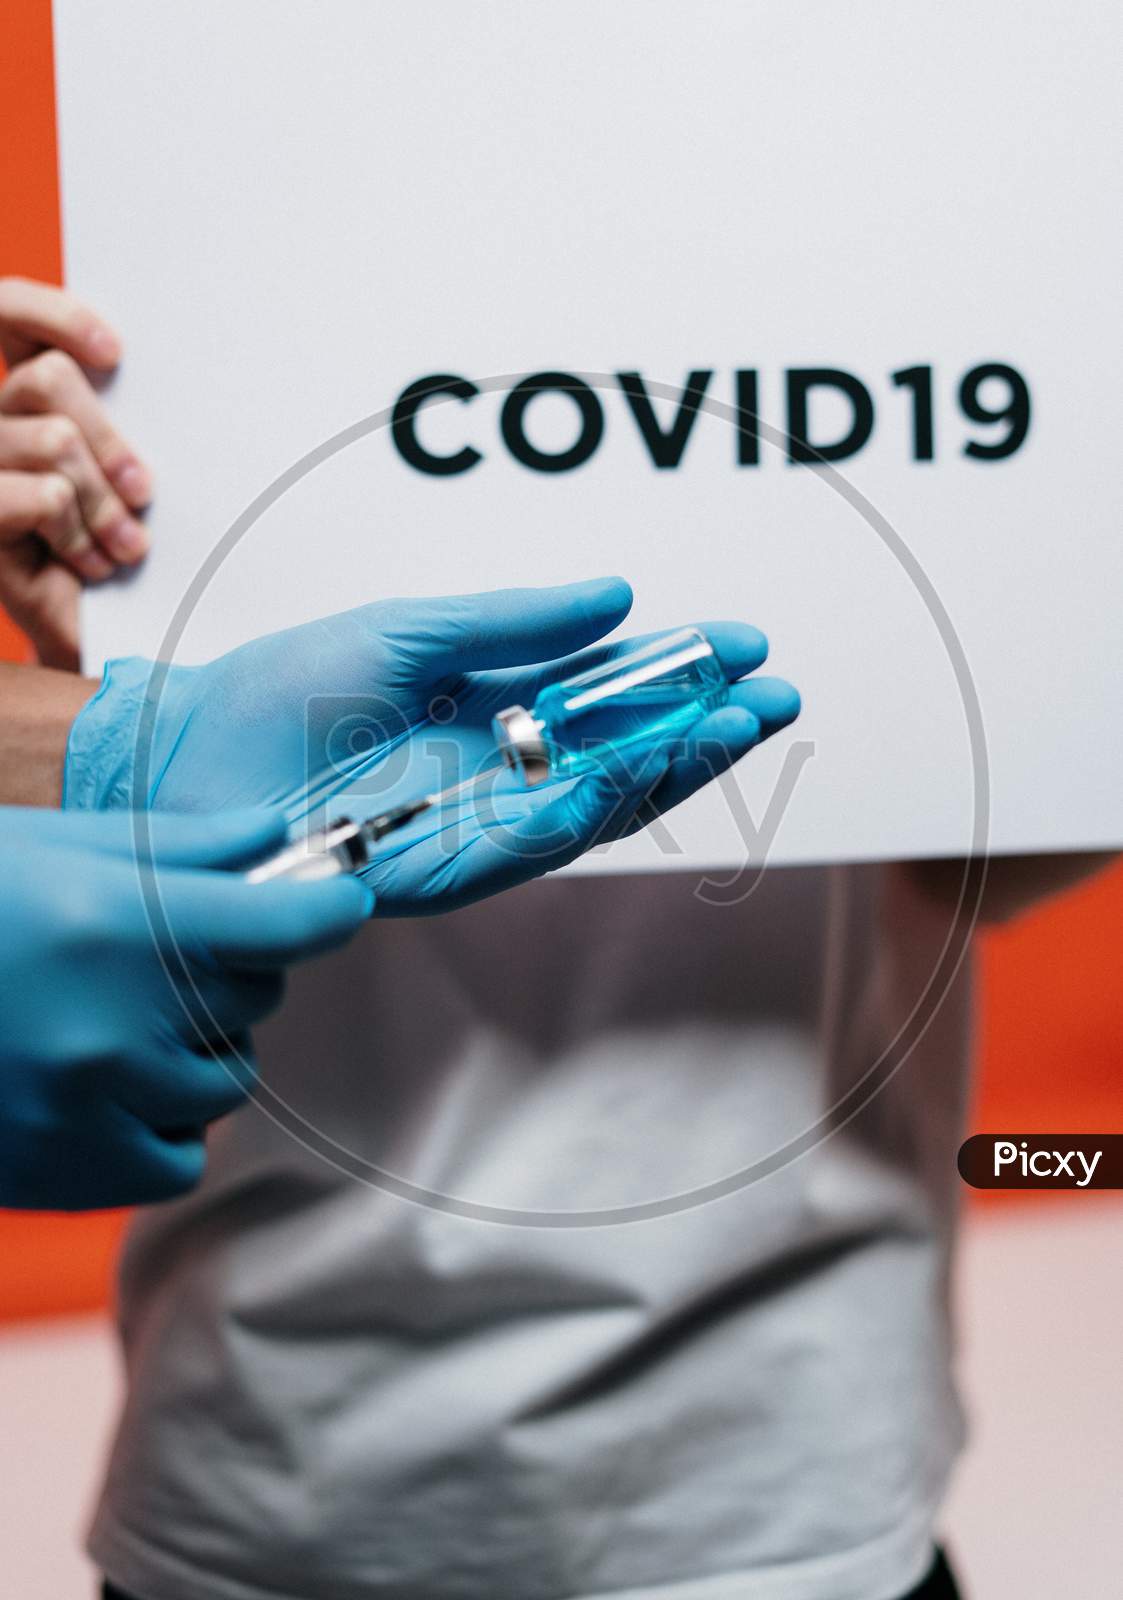 Covid 19 vaccine image